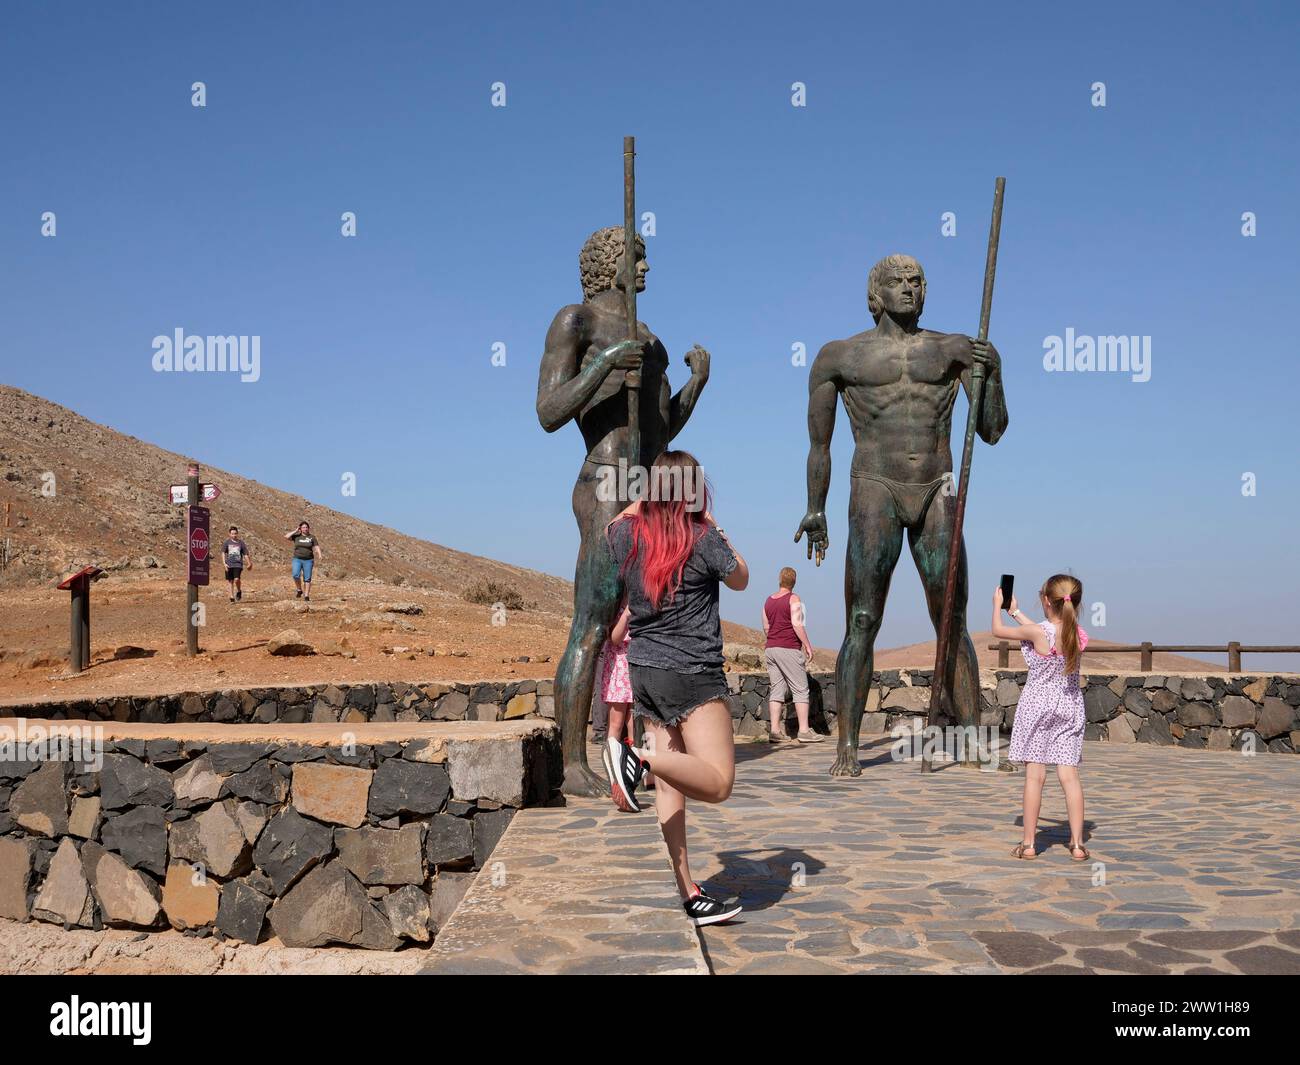 Mirador Corrales de guise, point de vue guise et Ayose, statues en bronze de 4 mètres de haut des rois de l'ancienne Fuerteventura, îles Canaries, Espagne Banque D'Images